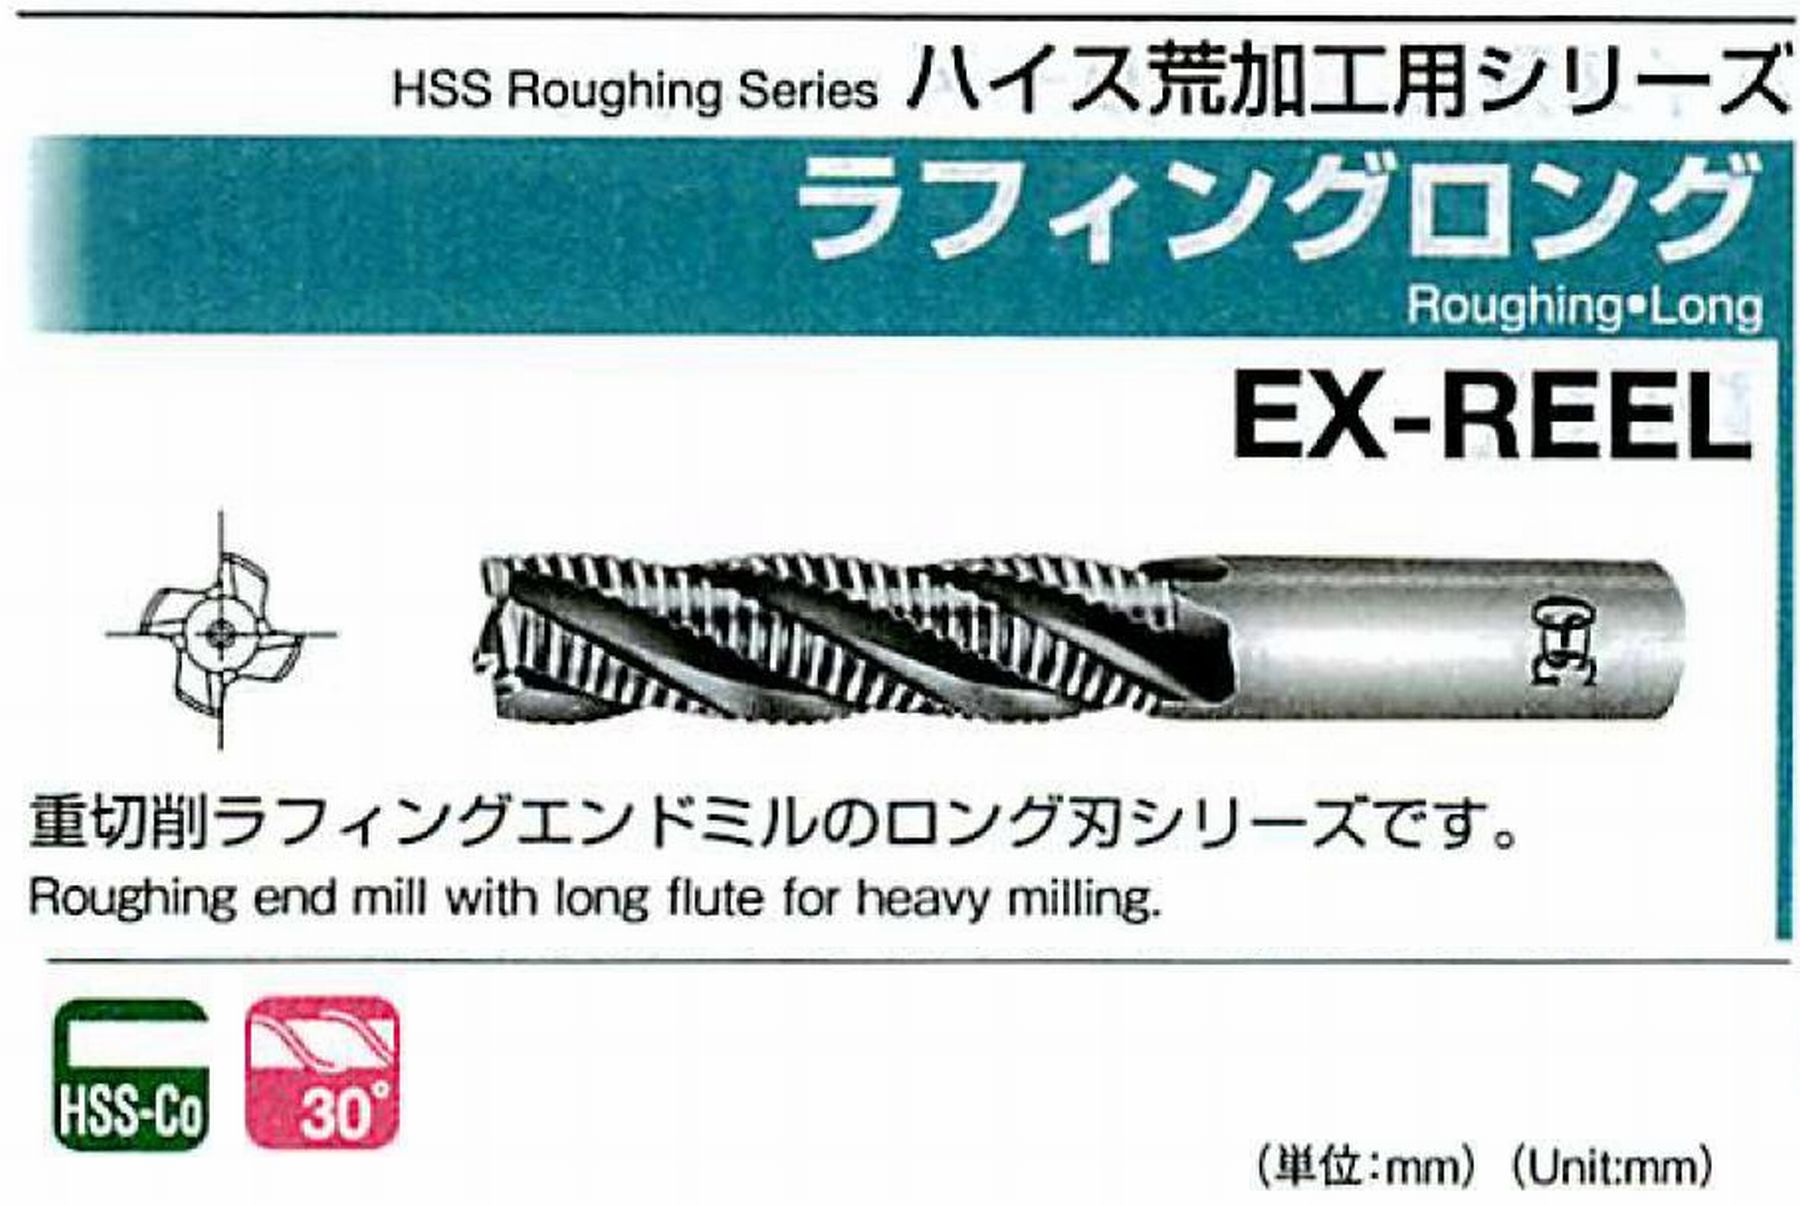 オーエスジー/OSG ラフィング ロング EX-REEL 外径33 全長186 刃長106 シャンク径32mm 刃数6